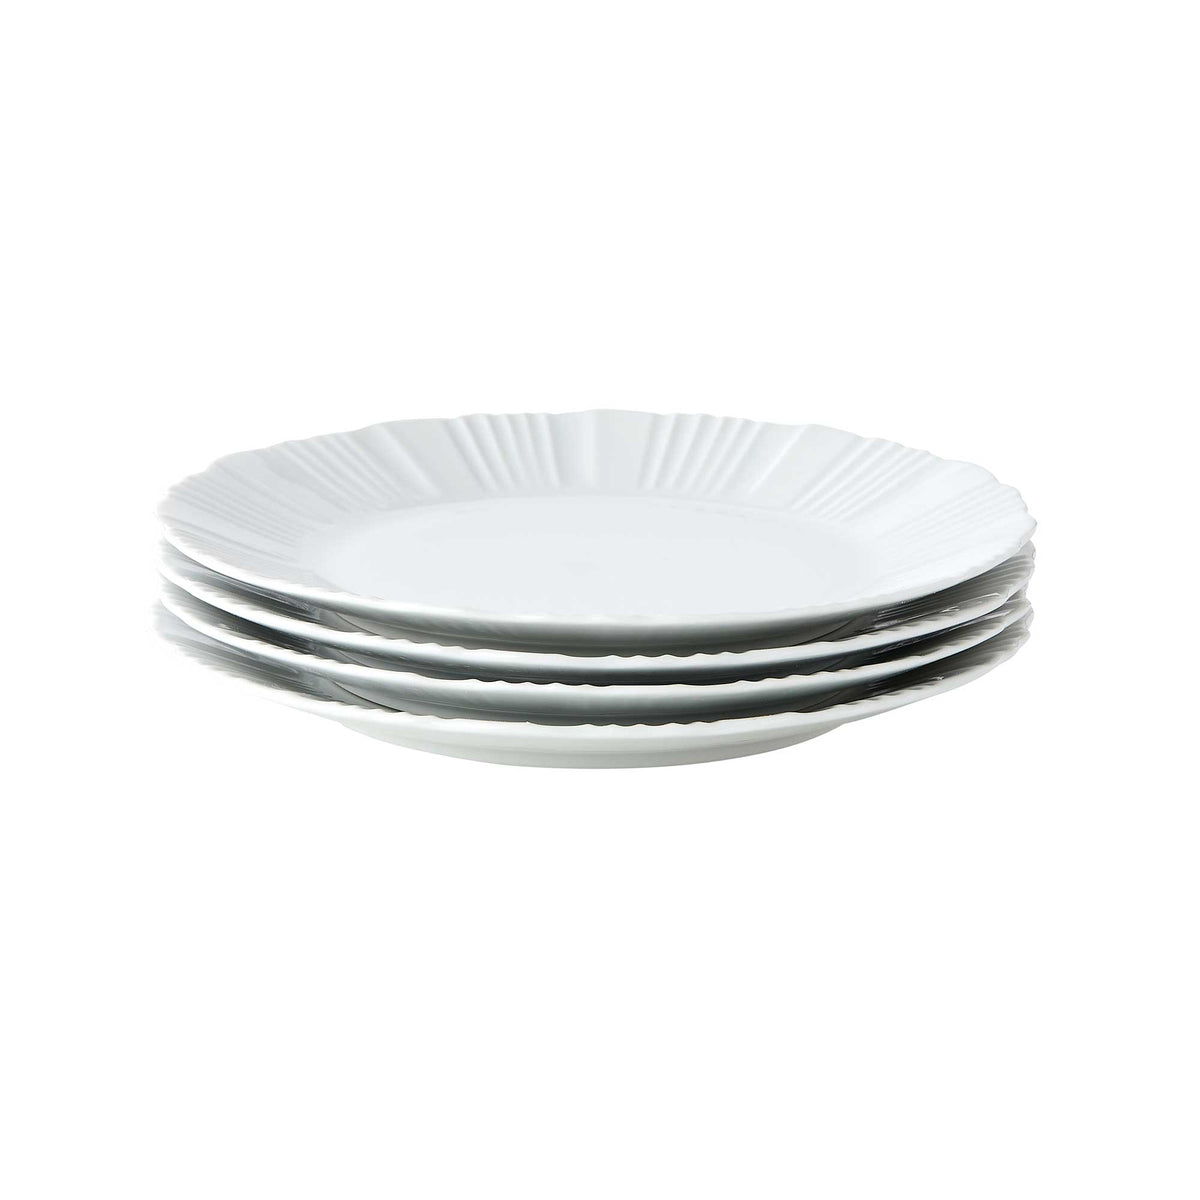 Reese Ruffled Dinner Plate Set